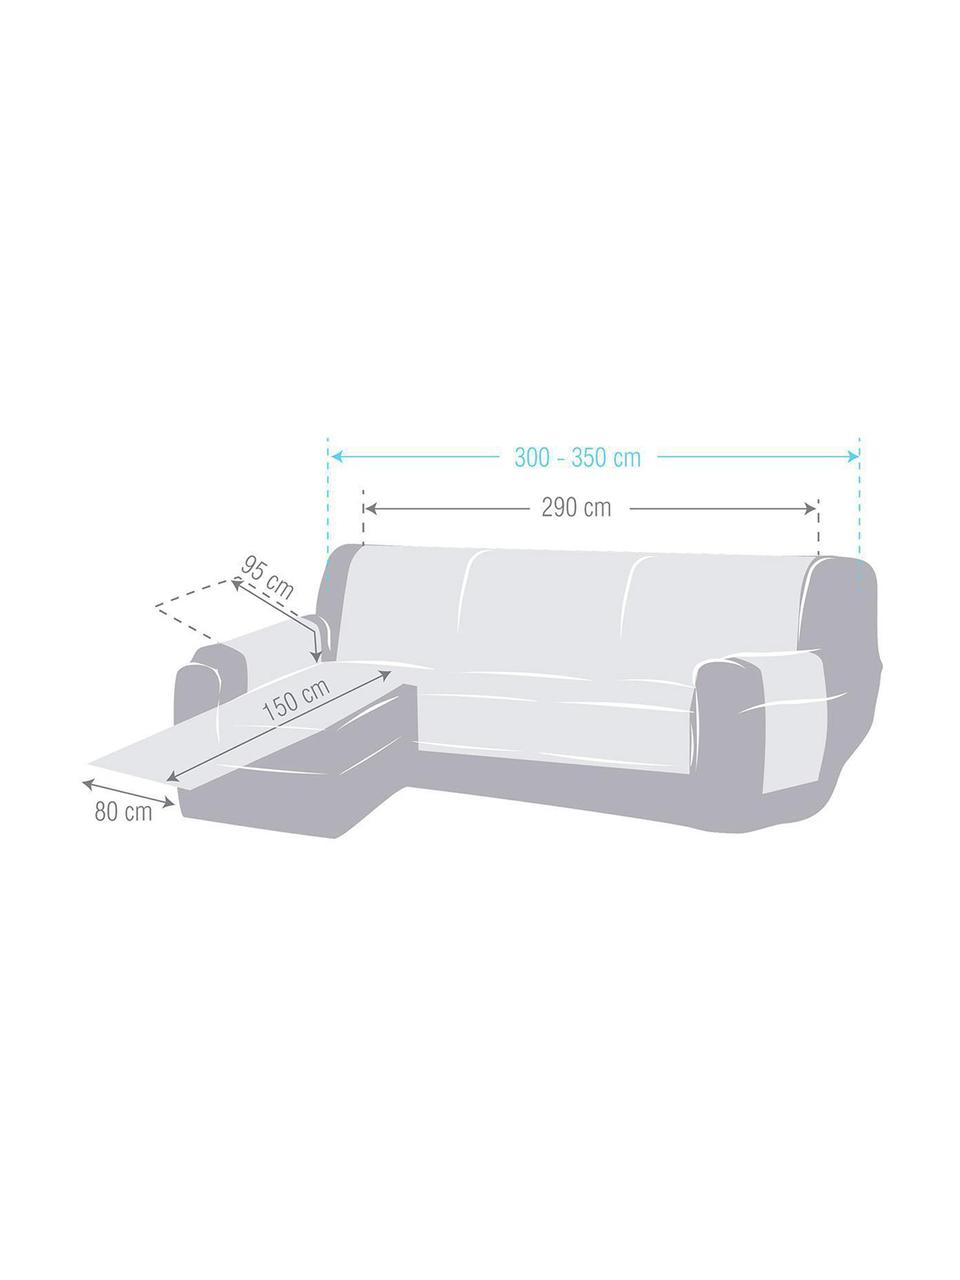 Narzuta na sofę narożną Levante, 65% bawełna, 35% poliester, Beżowy, S 150 x G 290 cm, lewostronna